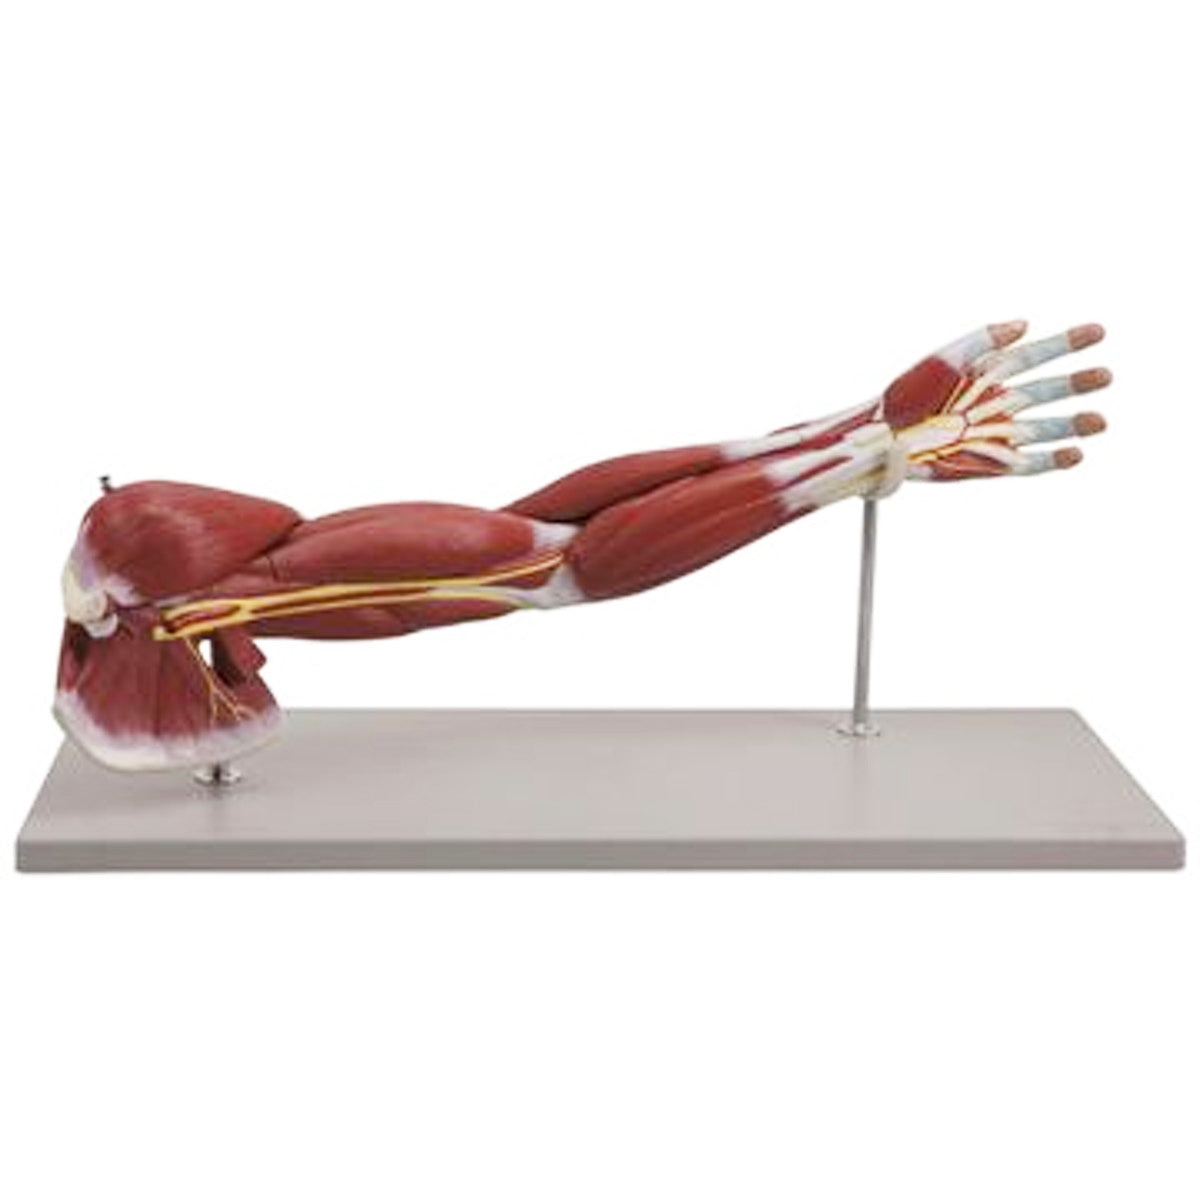 Komplet model af arm med muskler i relation til større kar og nerver - kan adskilles i 7 dele